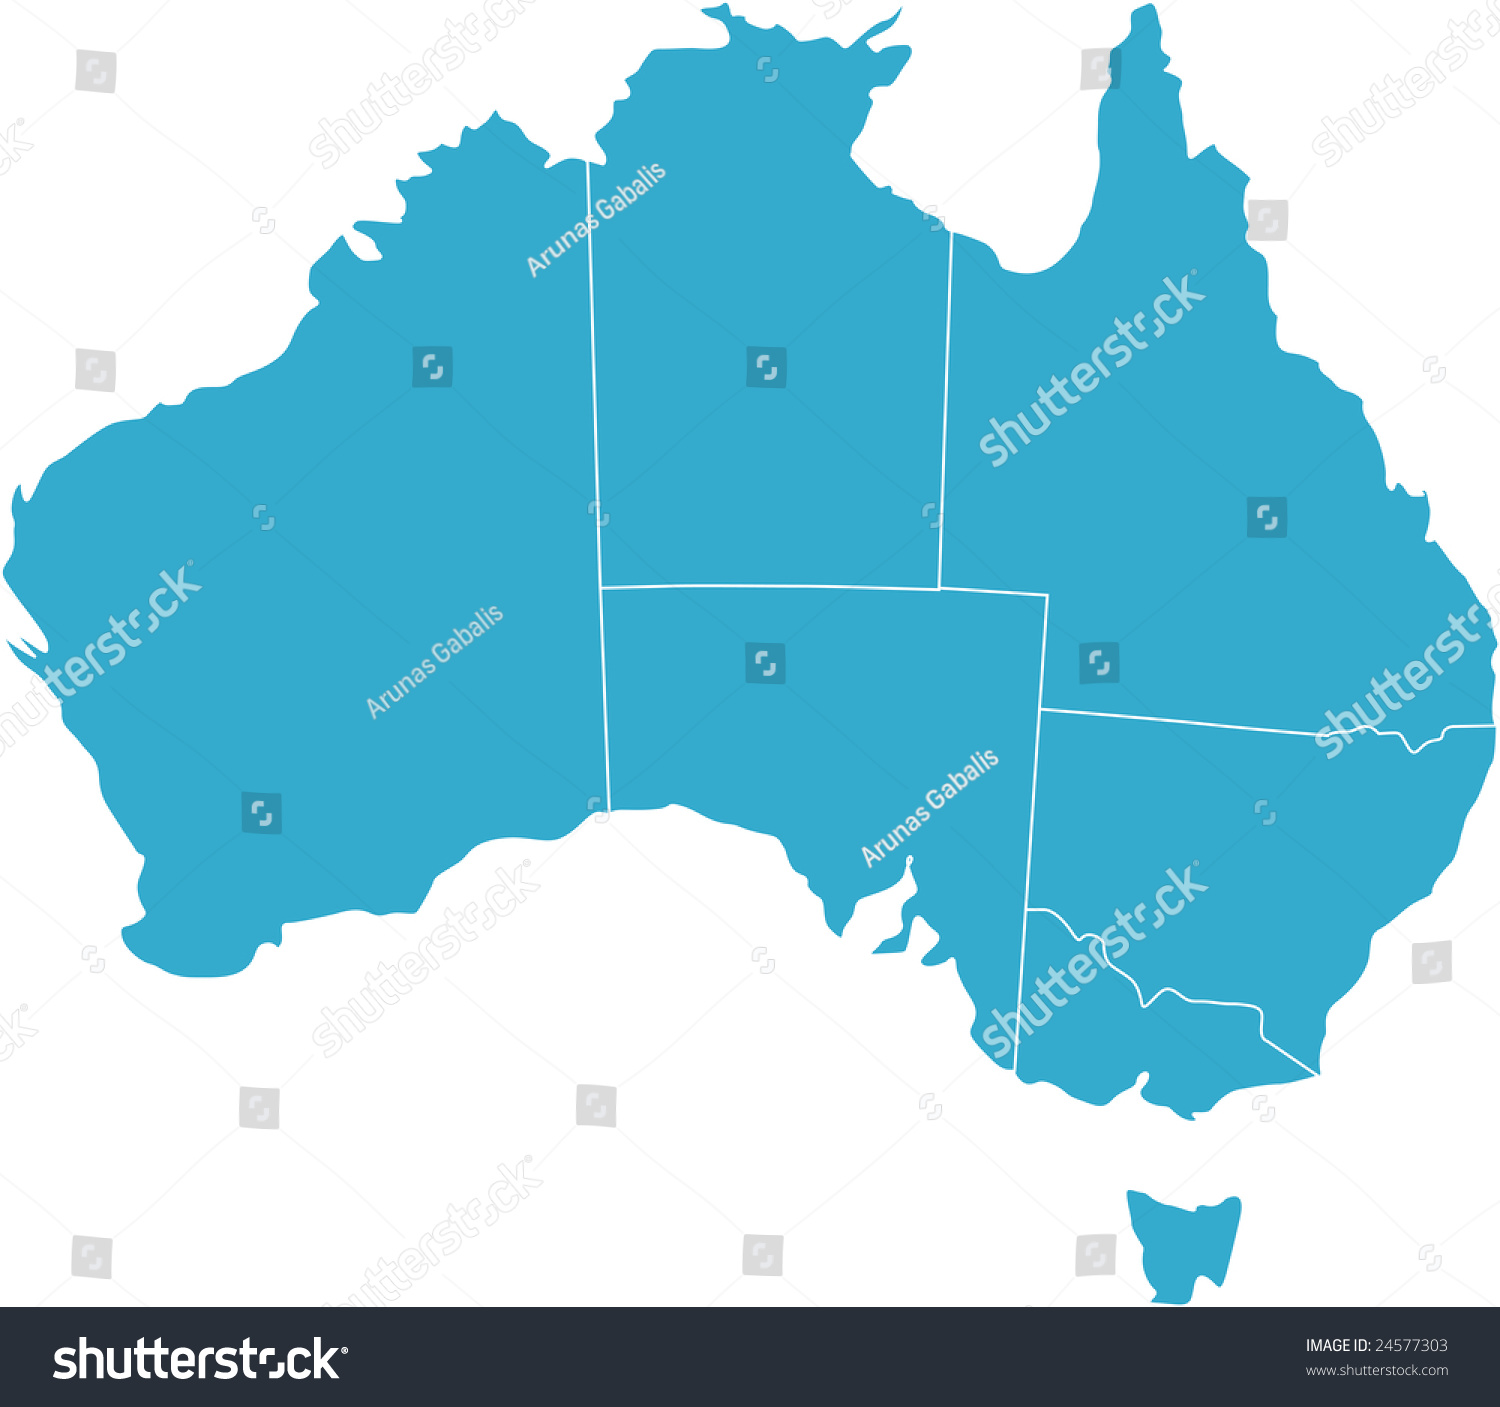 澳大利亚主要城市地图_澳大利亚所有城市 - 随意云